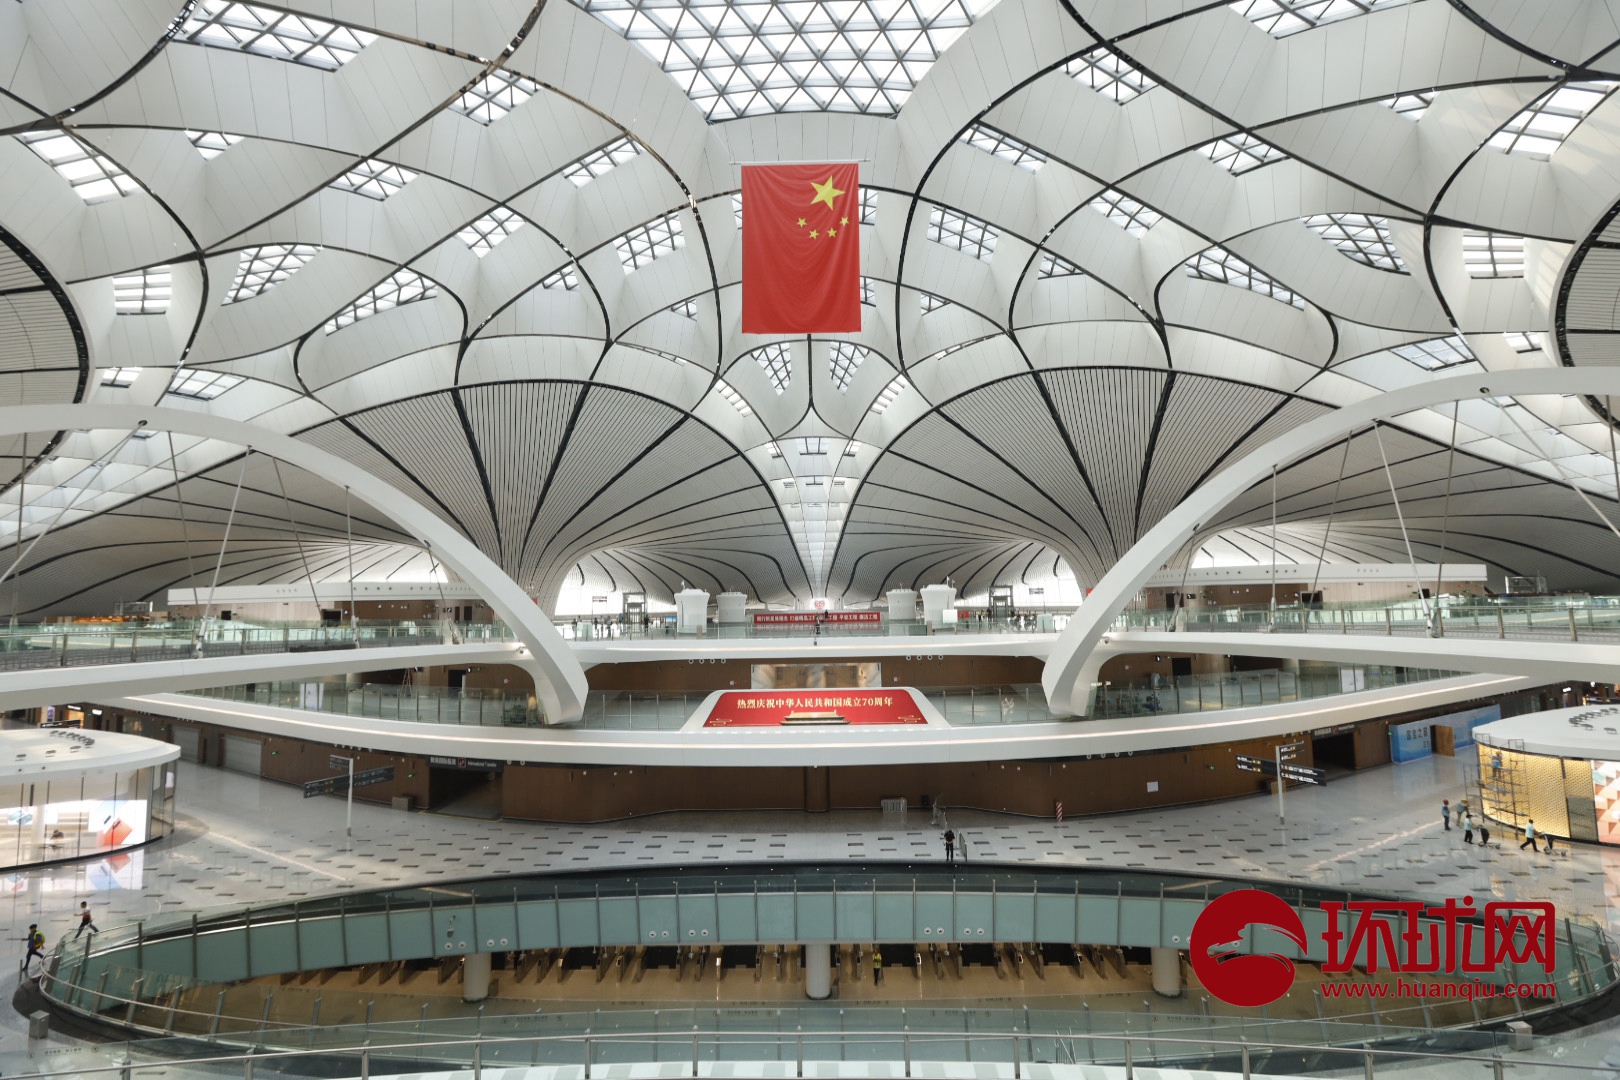 北京大兴国际机场-扎哈·哈迪德建筑事务所-交通建筑案例-筑龙建筑设计论坛